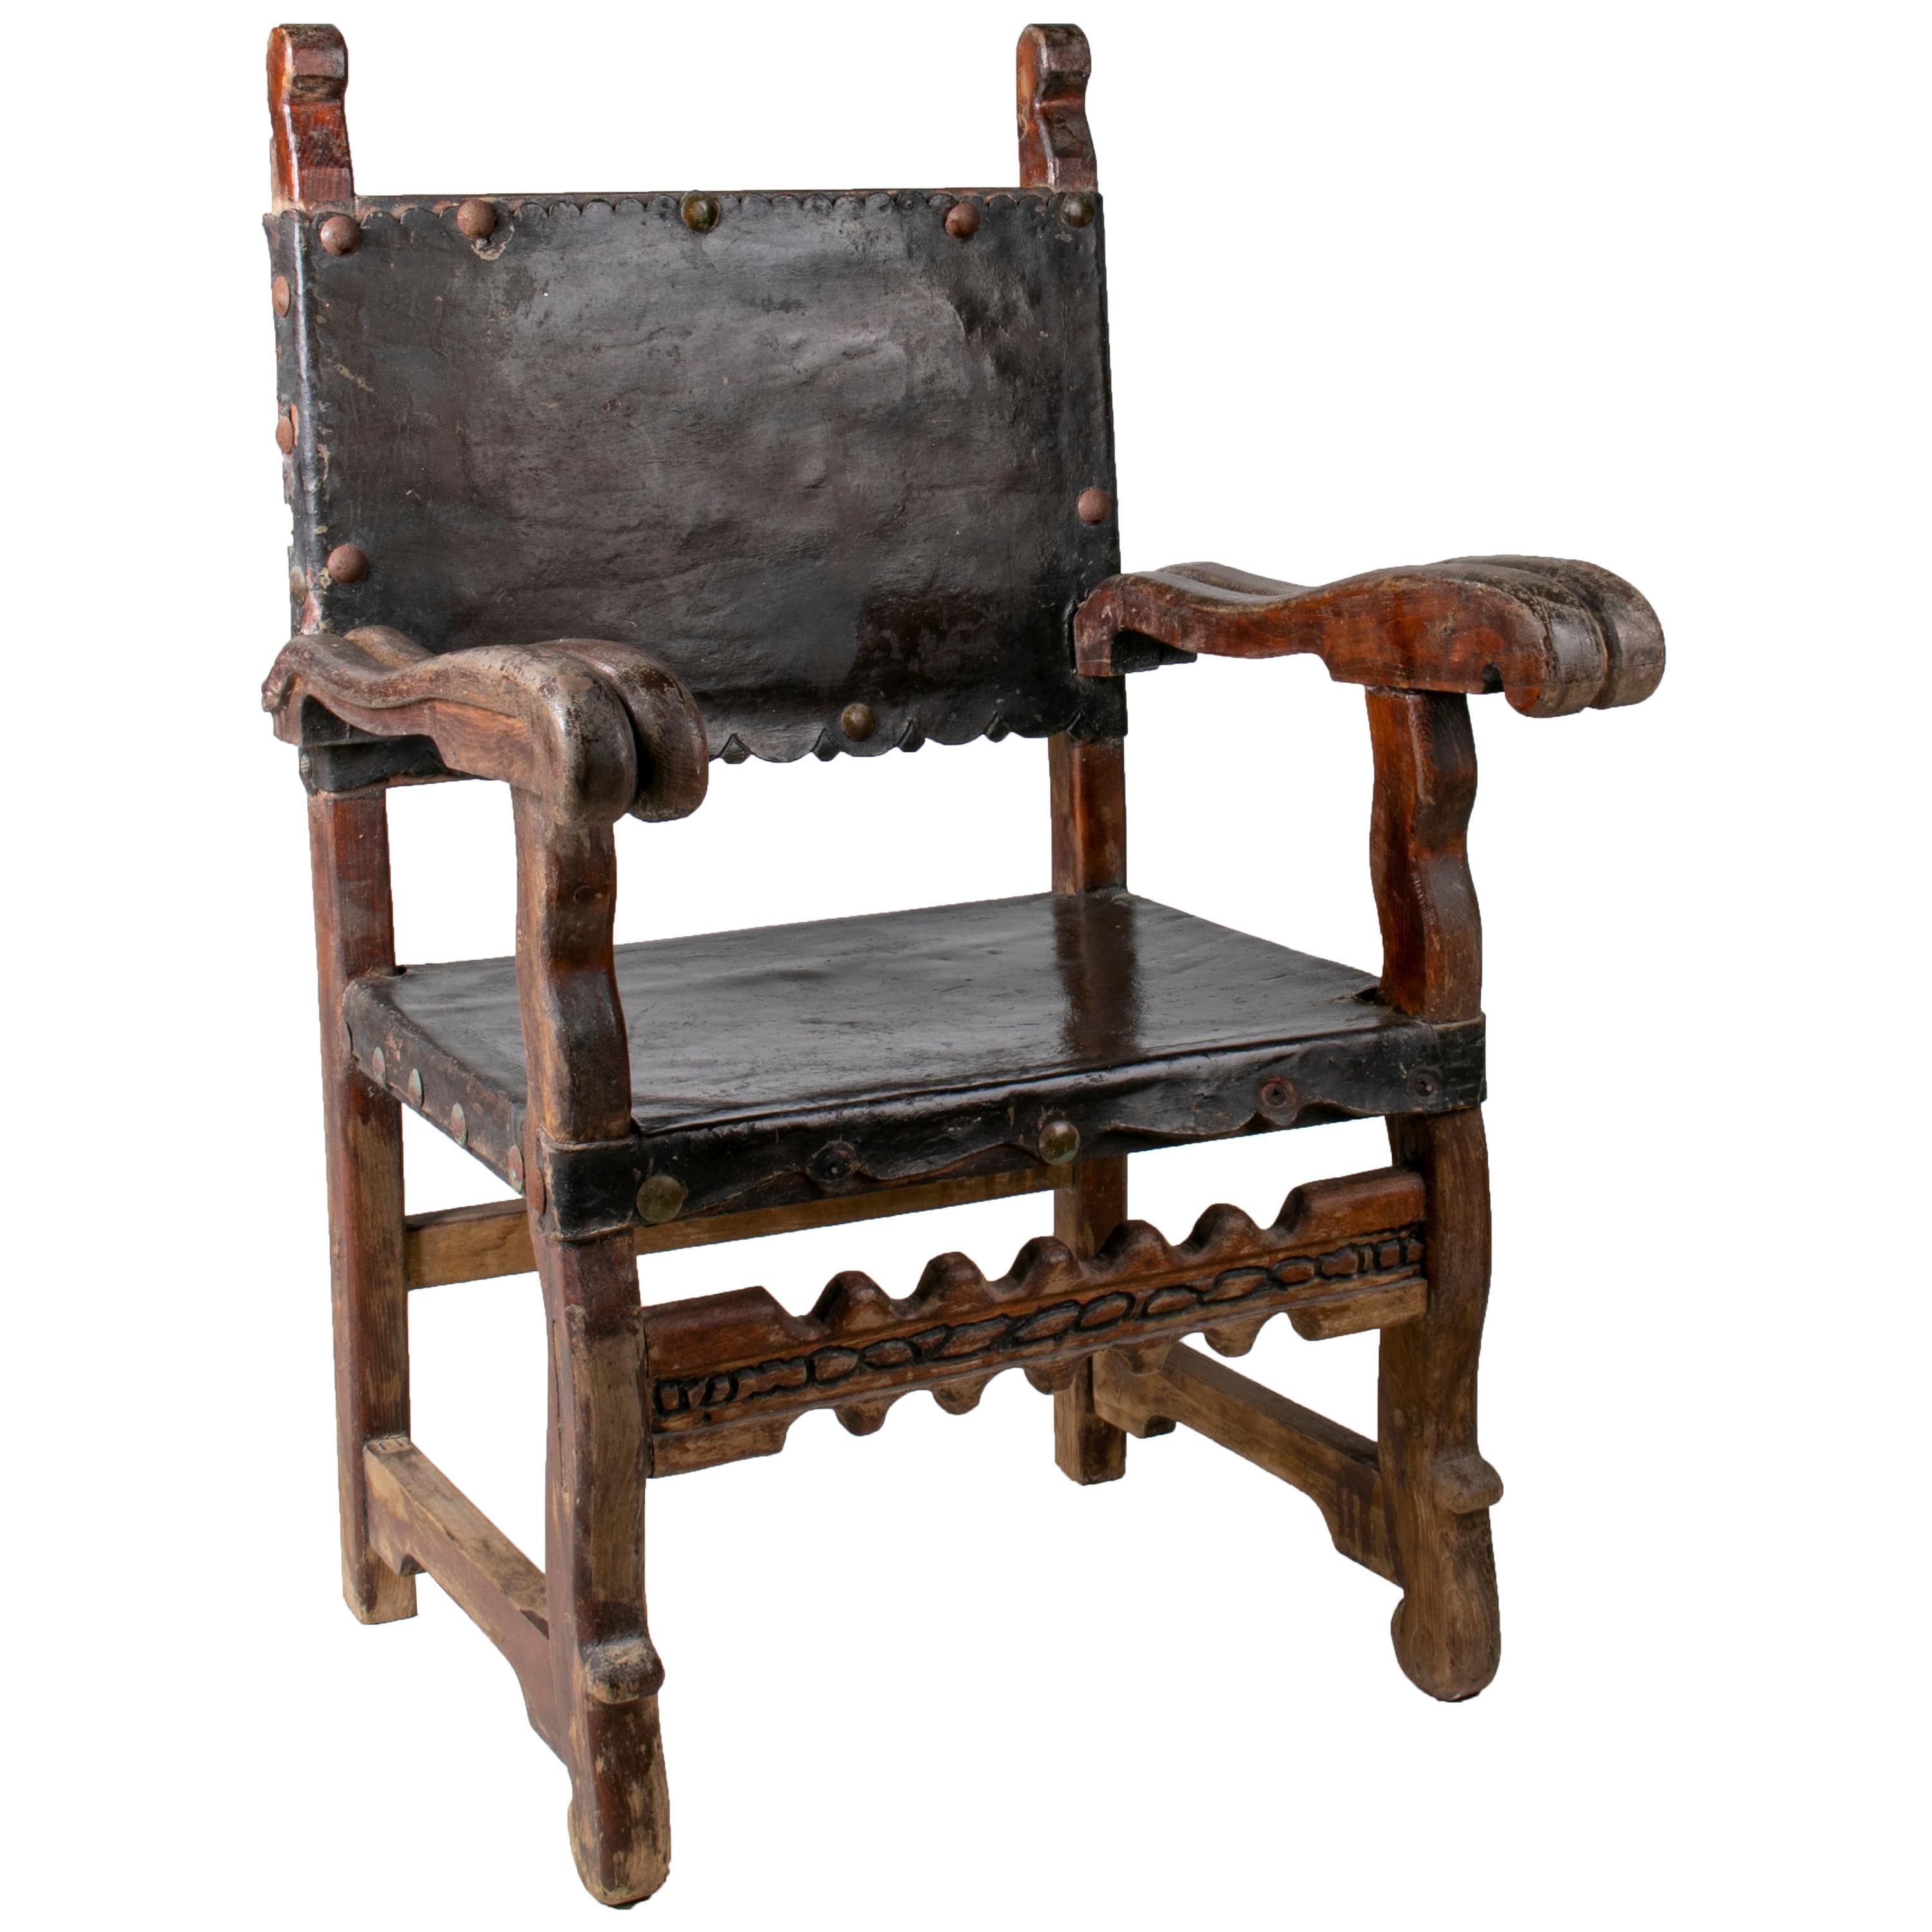 peruanischer "Frailero"-Holzstuhl aus dem 18. Jahrhundert mit Sitz und Rückenlehne aus Leder